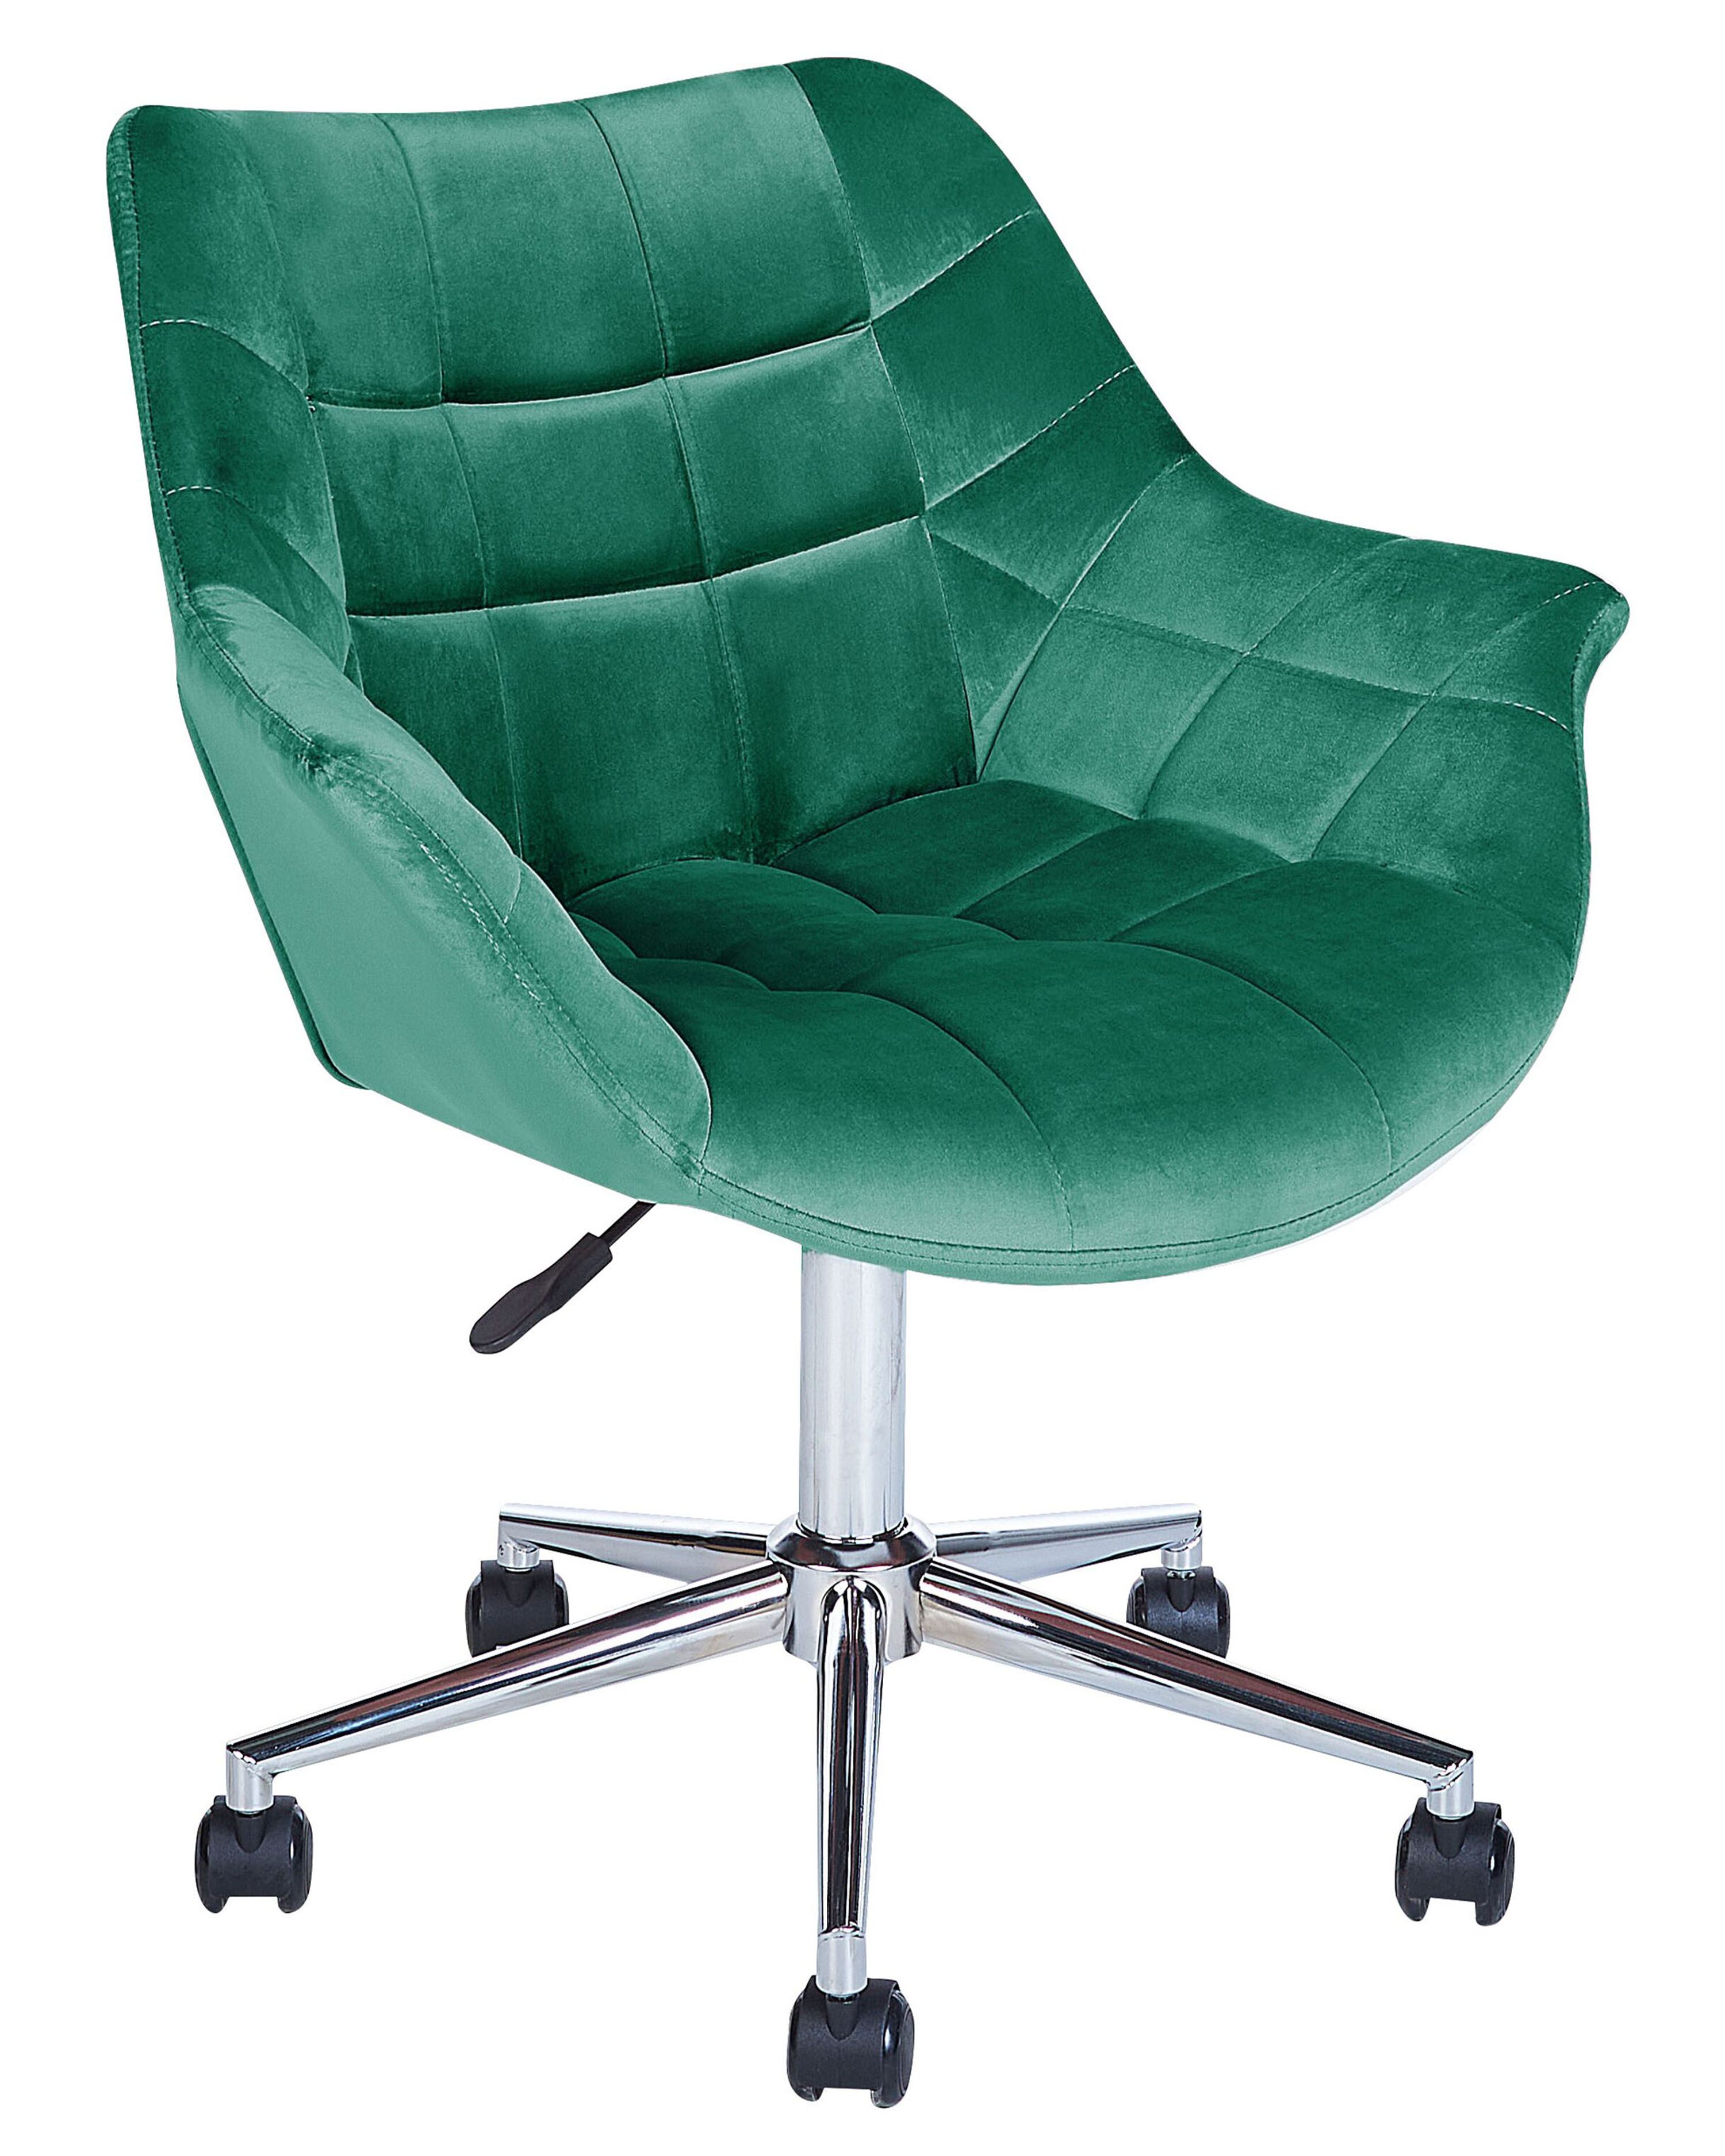 Um quarto com uma secretária e uma cadeira com uma cadeira verde e uma  secretária com uma estante.